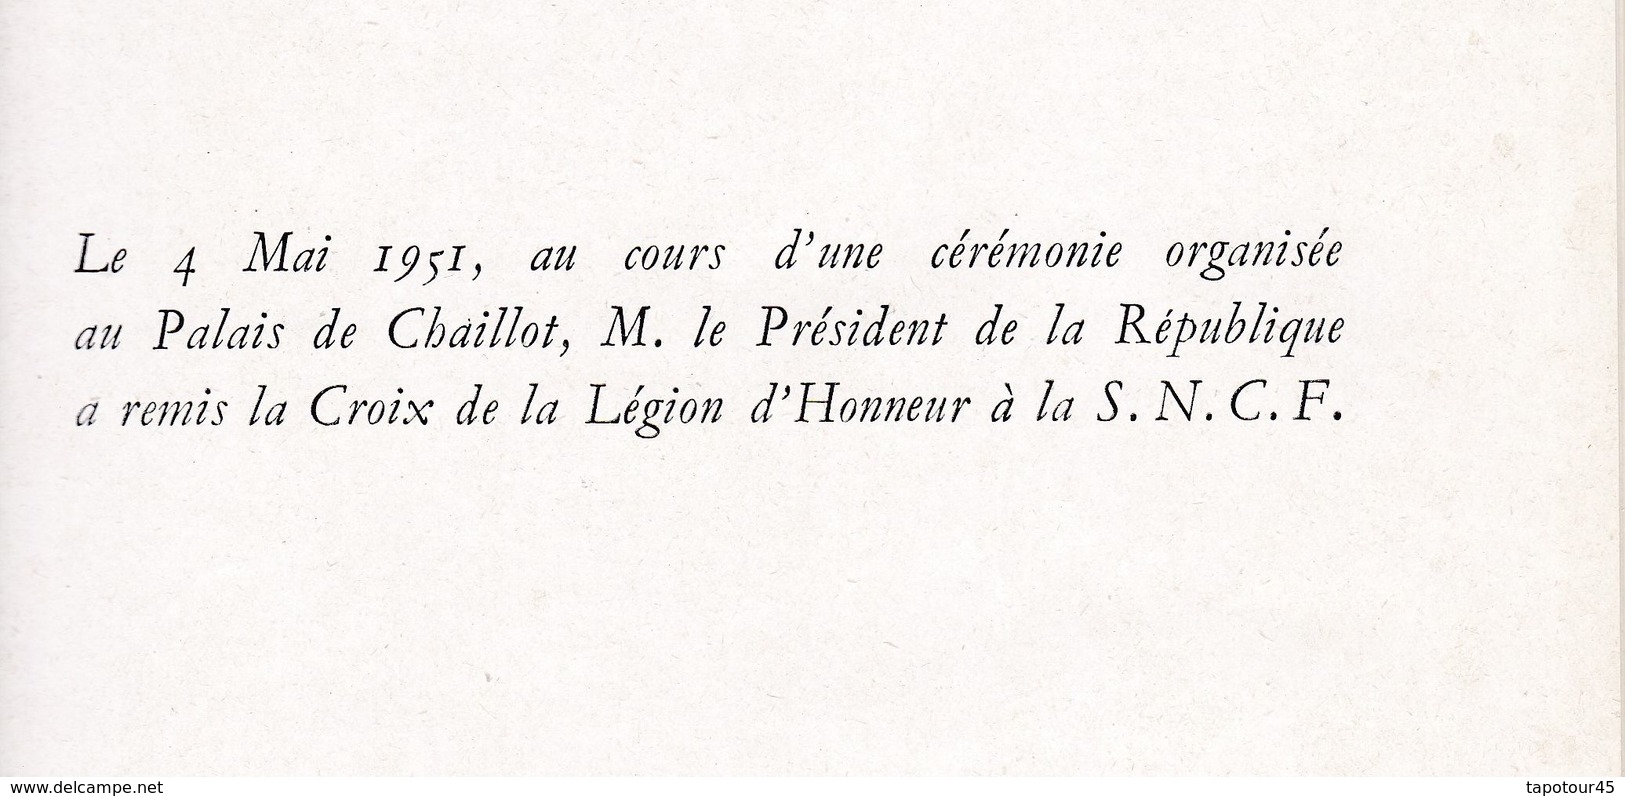 Fascicule Cartonné A4 SNCF 1951 Remise De La Légion D'Honneur (12 Pages Avec Les Discours) - Documents